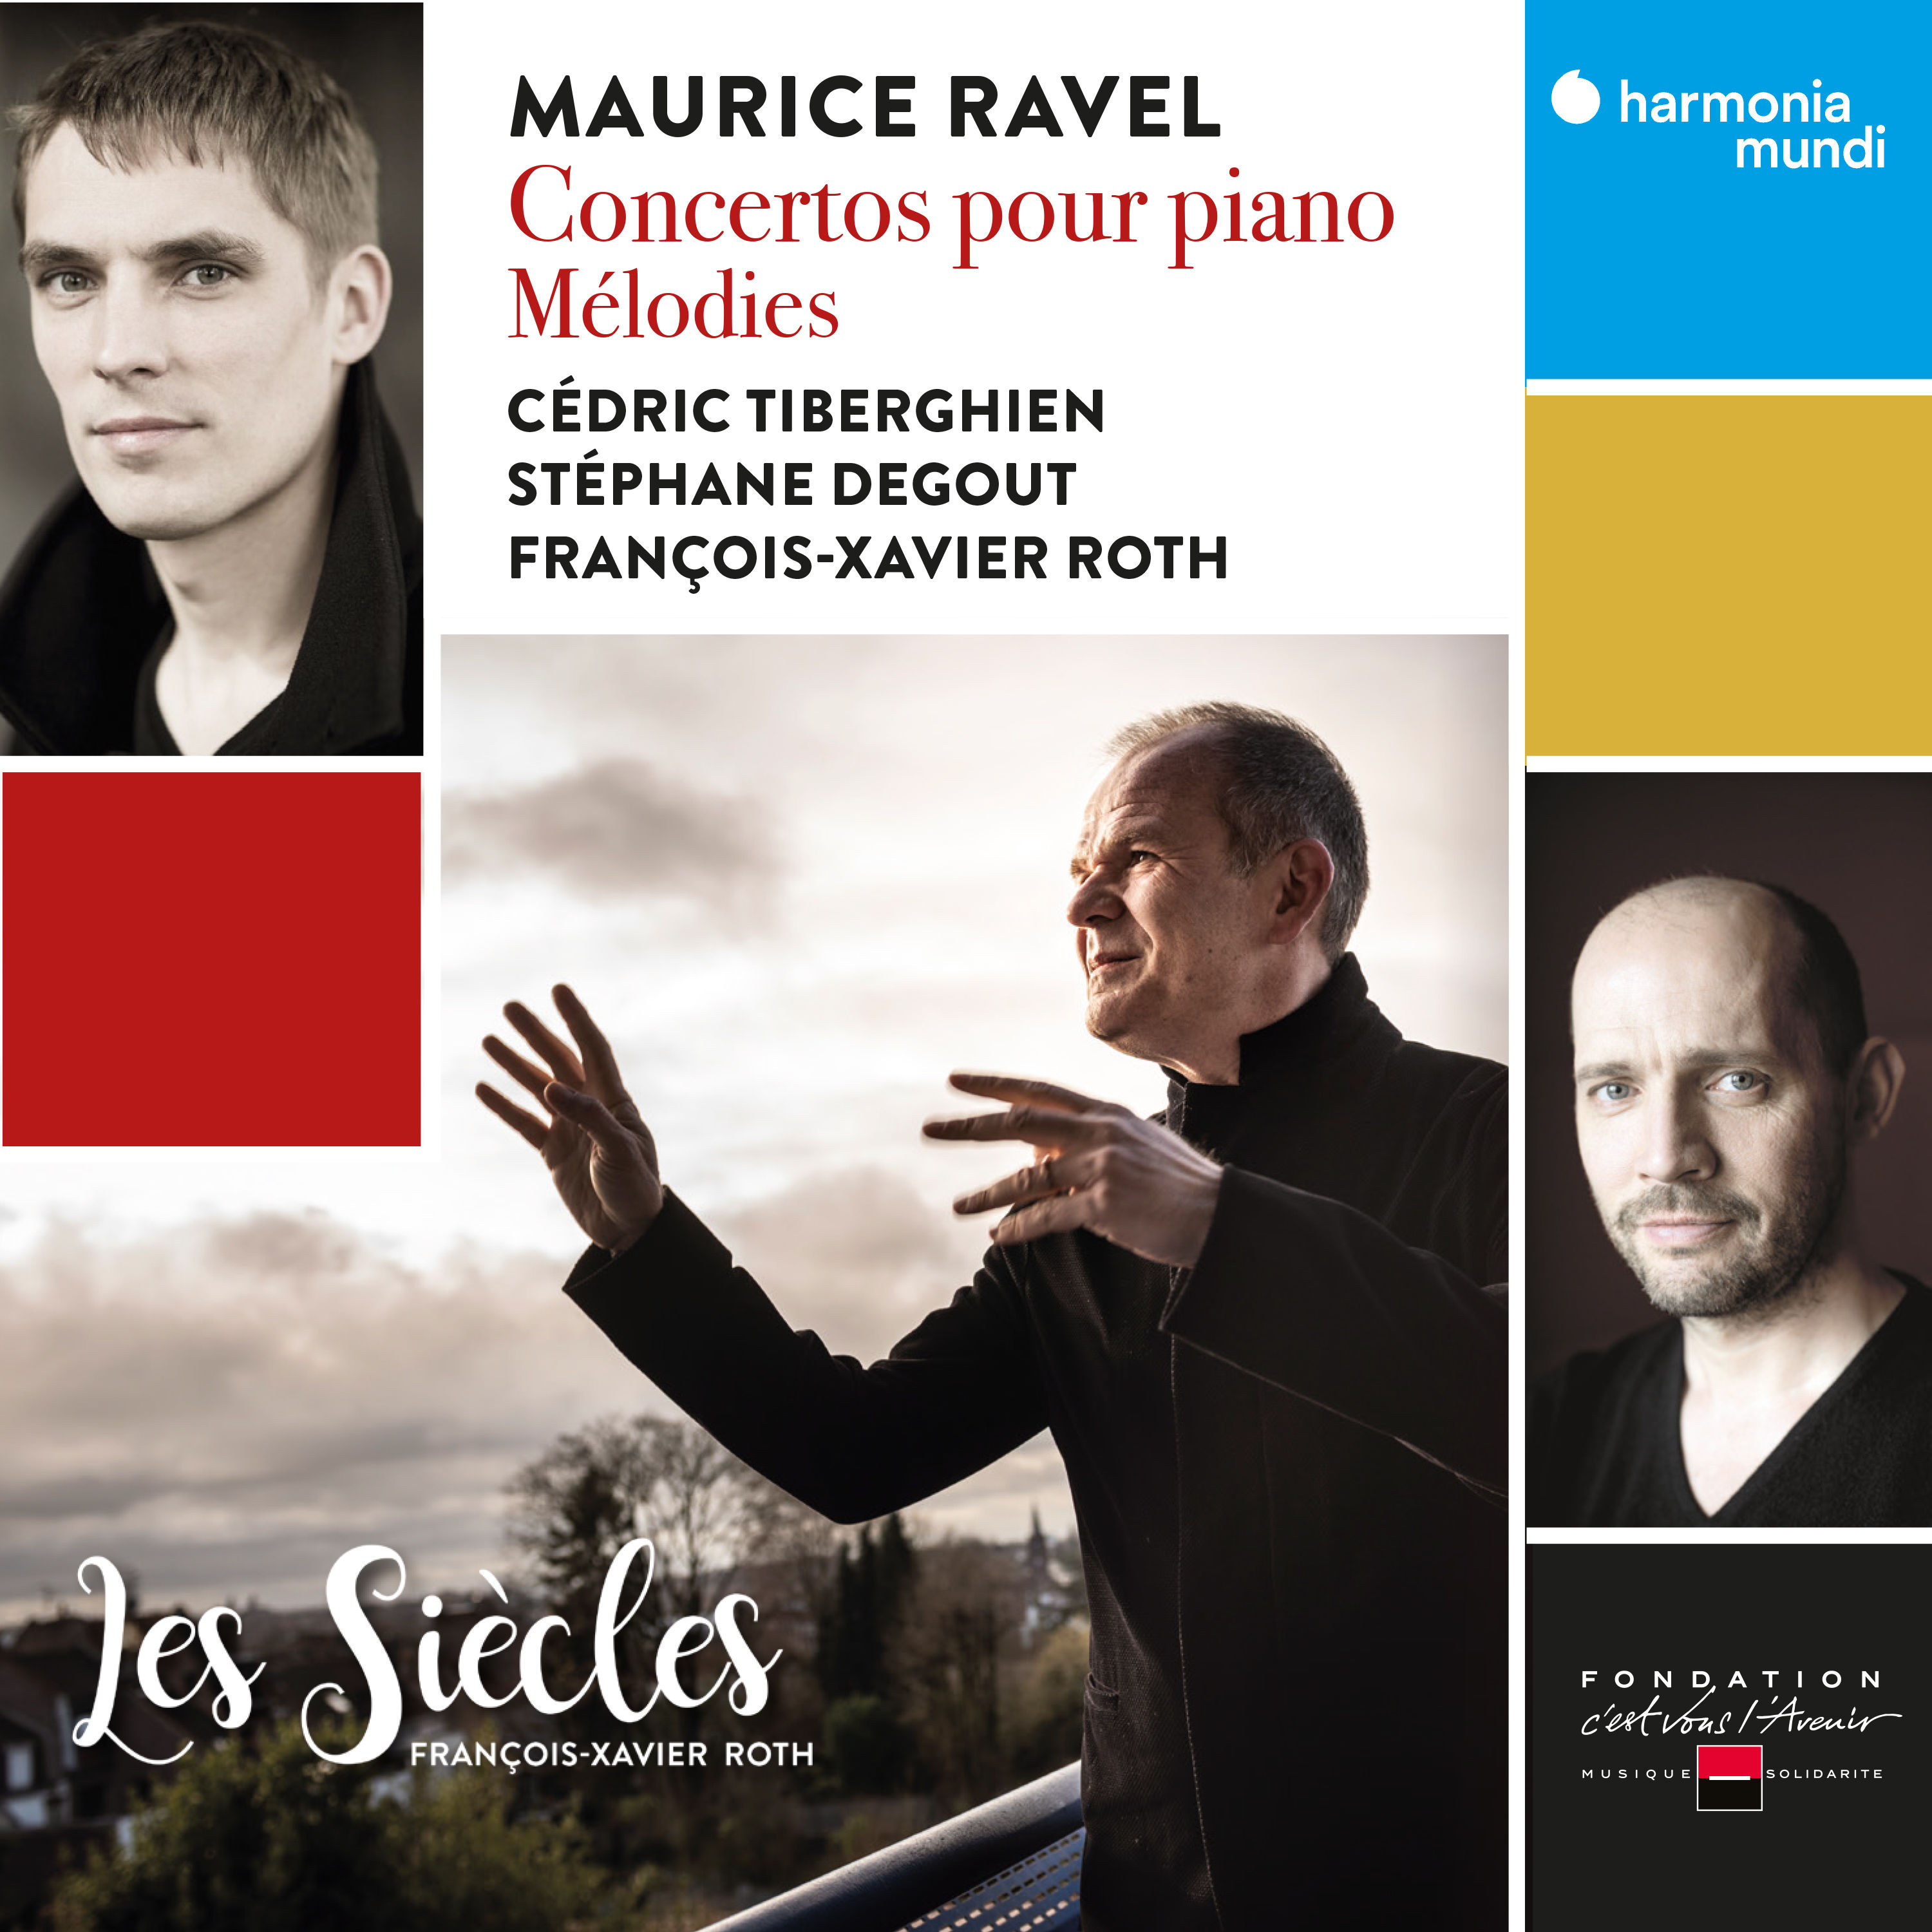 Ravel - Concertos pour piano, Melodies - Les Siecles, Roth - Cedric Tiberghien 24-96